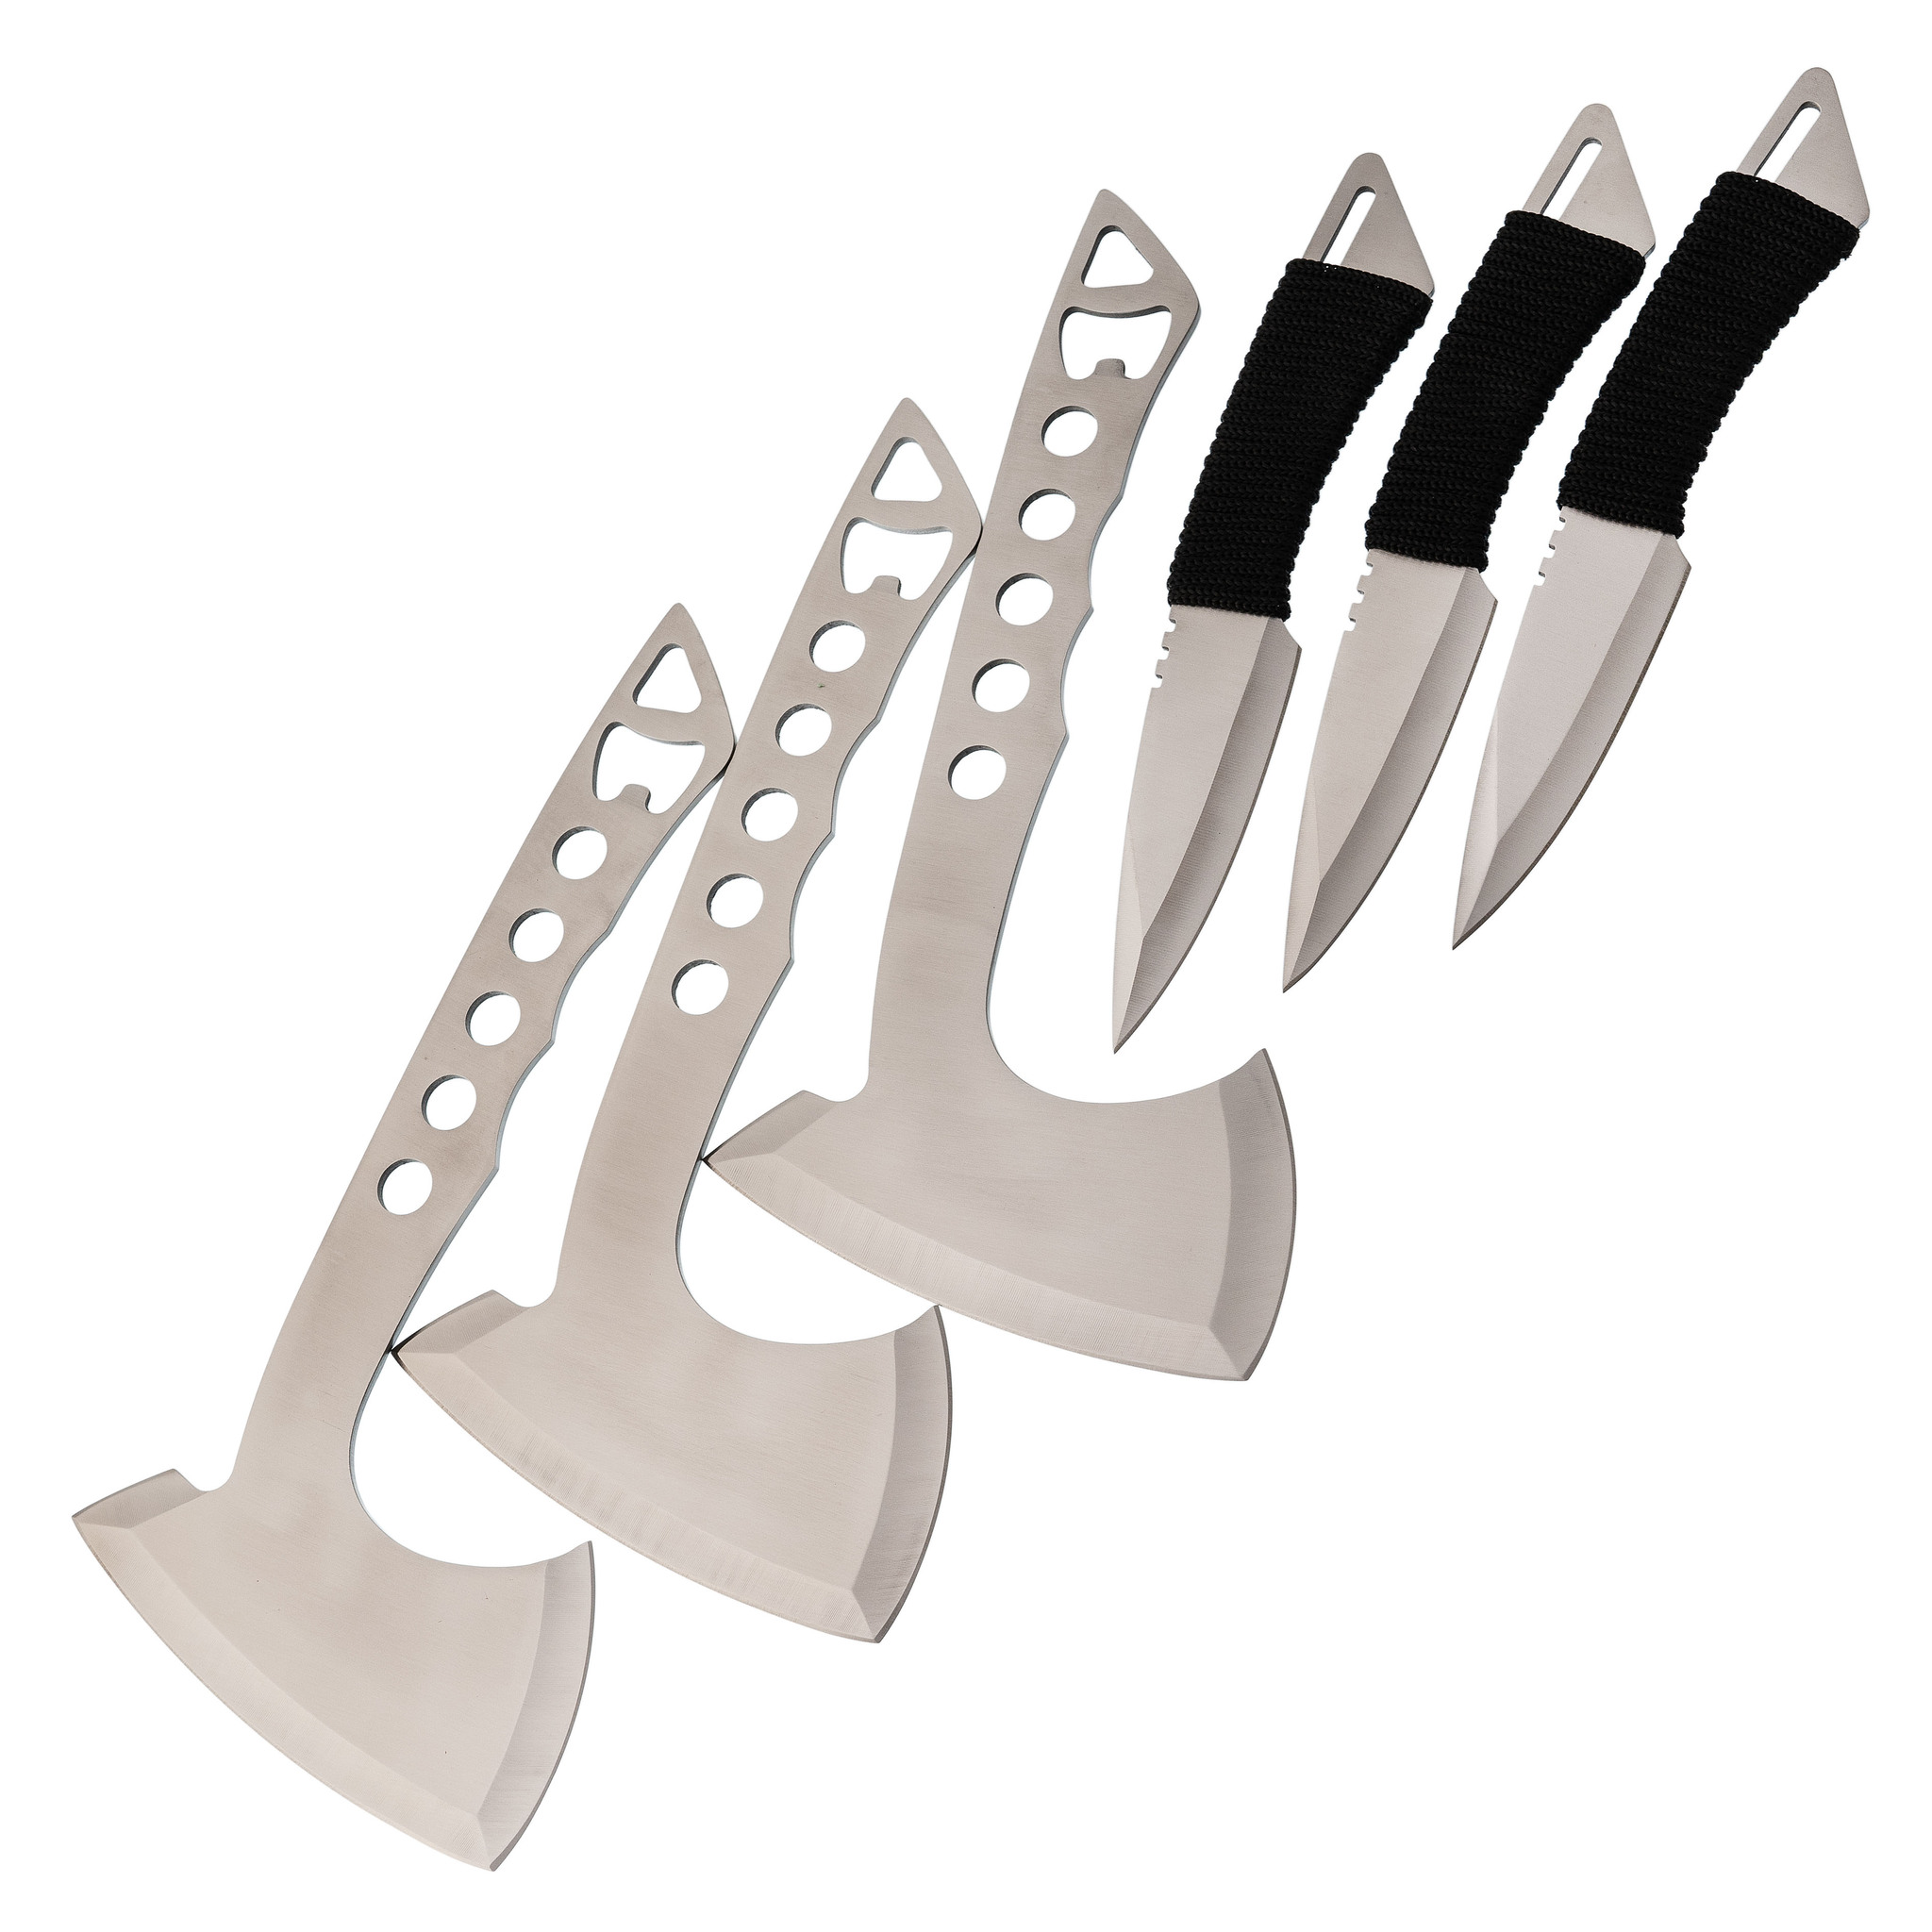 Набор спортивных топоров и ножей Баланс набор из 3 спортивных ножей ястреб